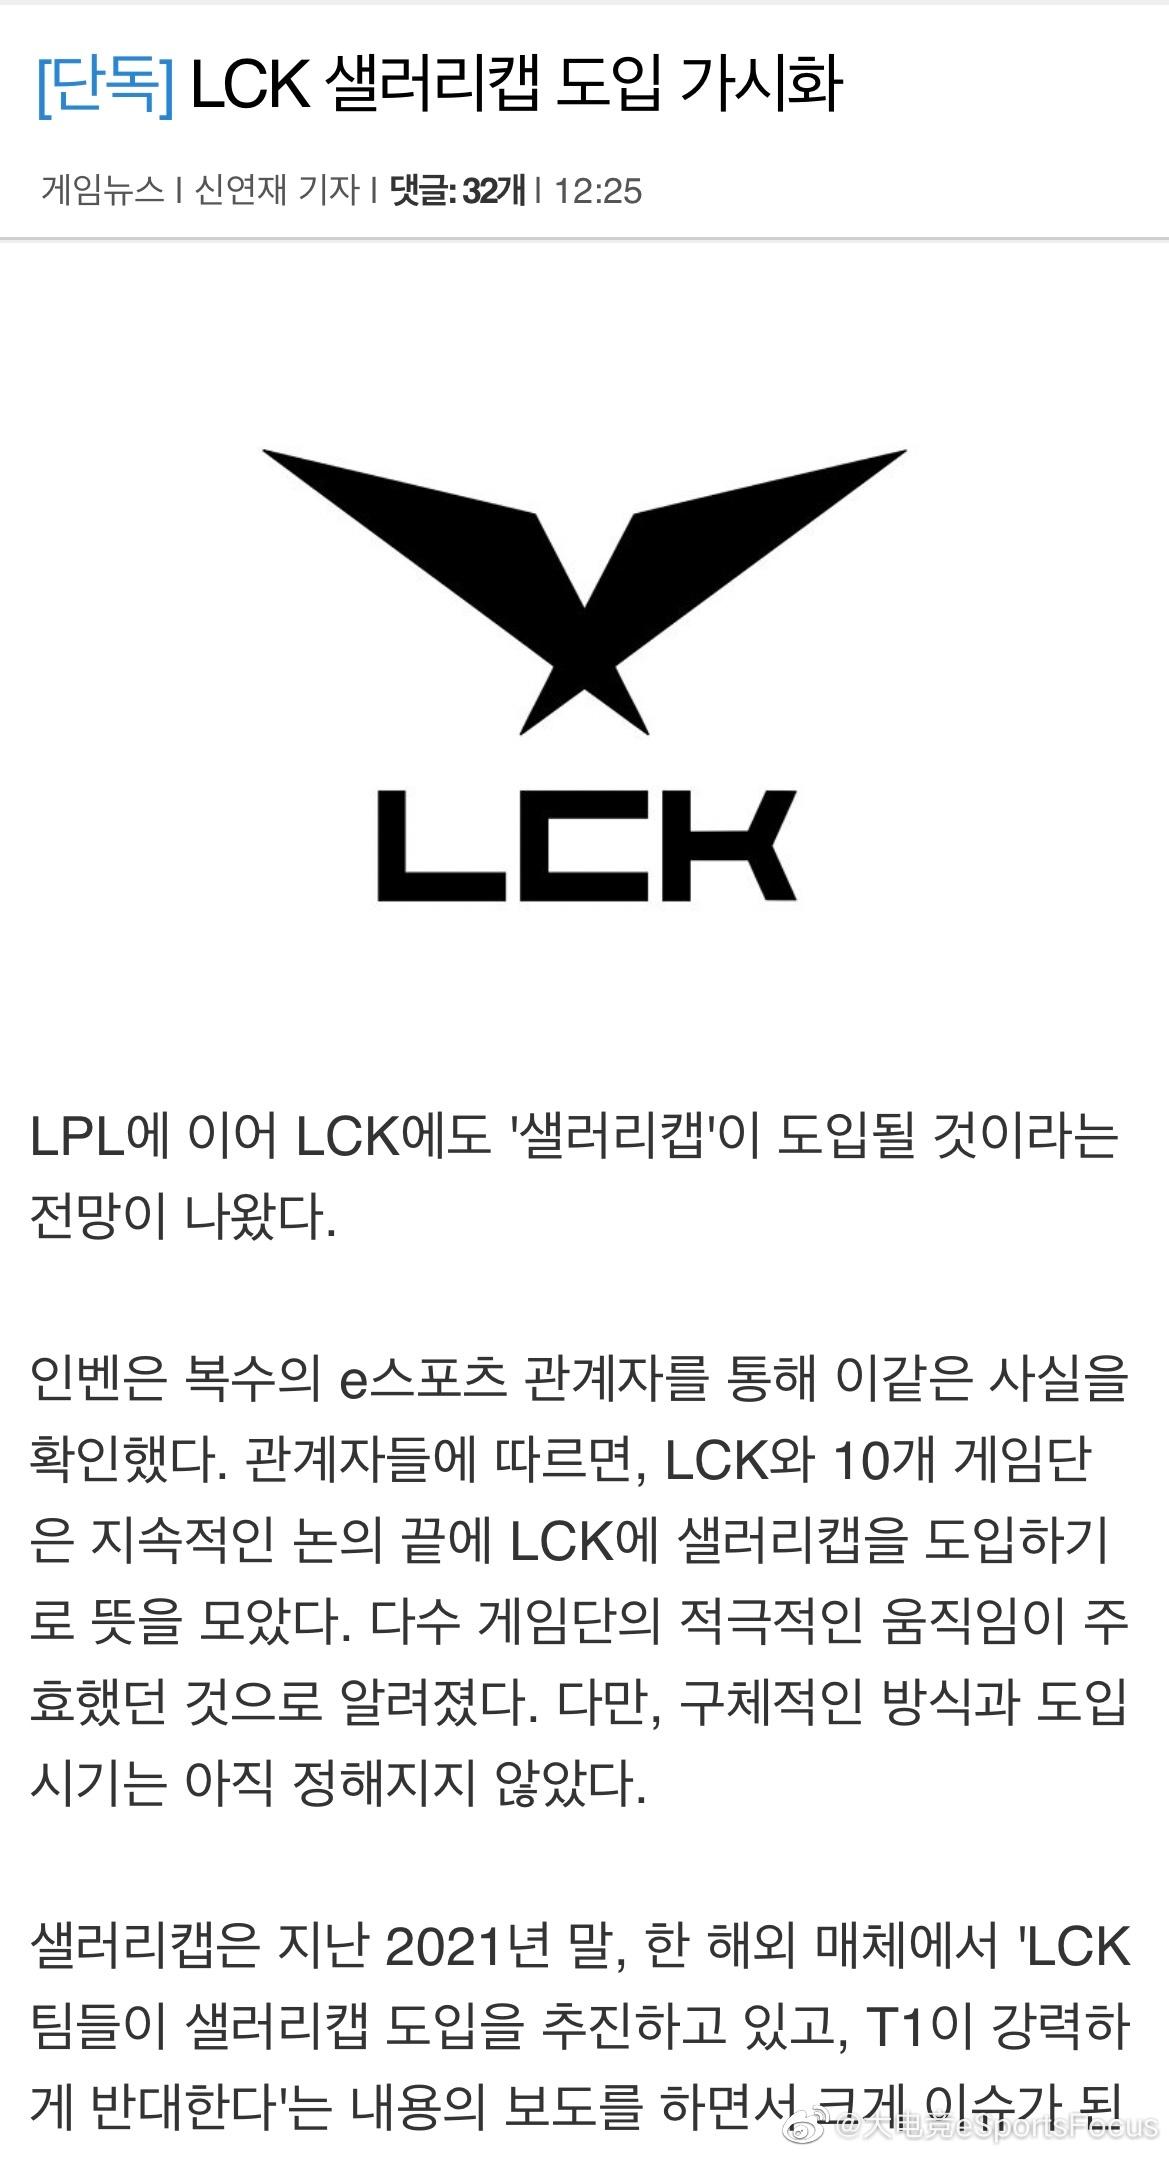  

韩媒inven发布文章称，继LPL之后，LCK也有引进“工资帽”的想法。
